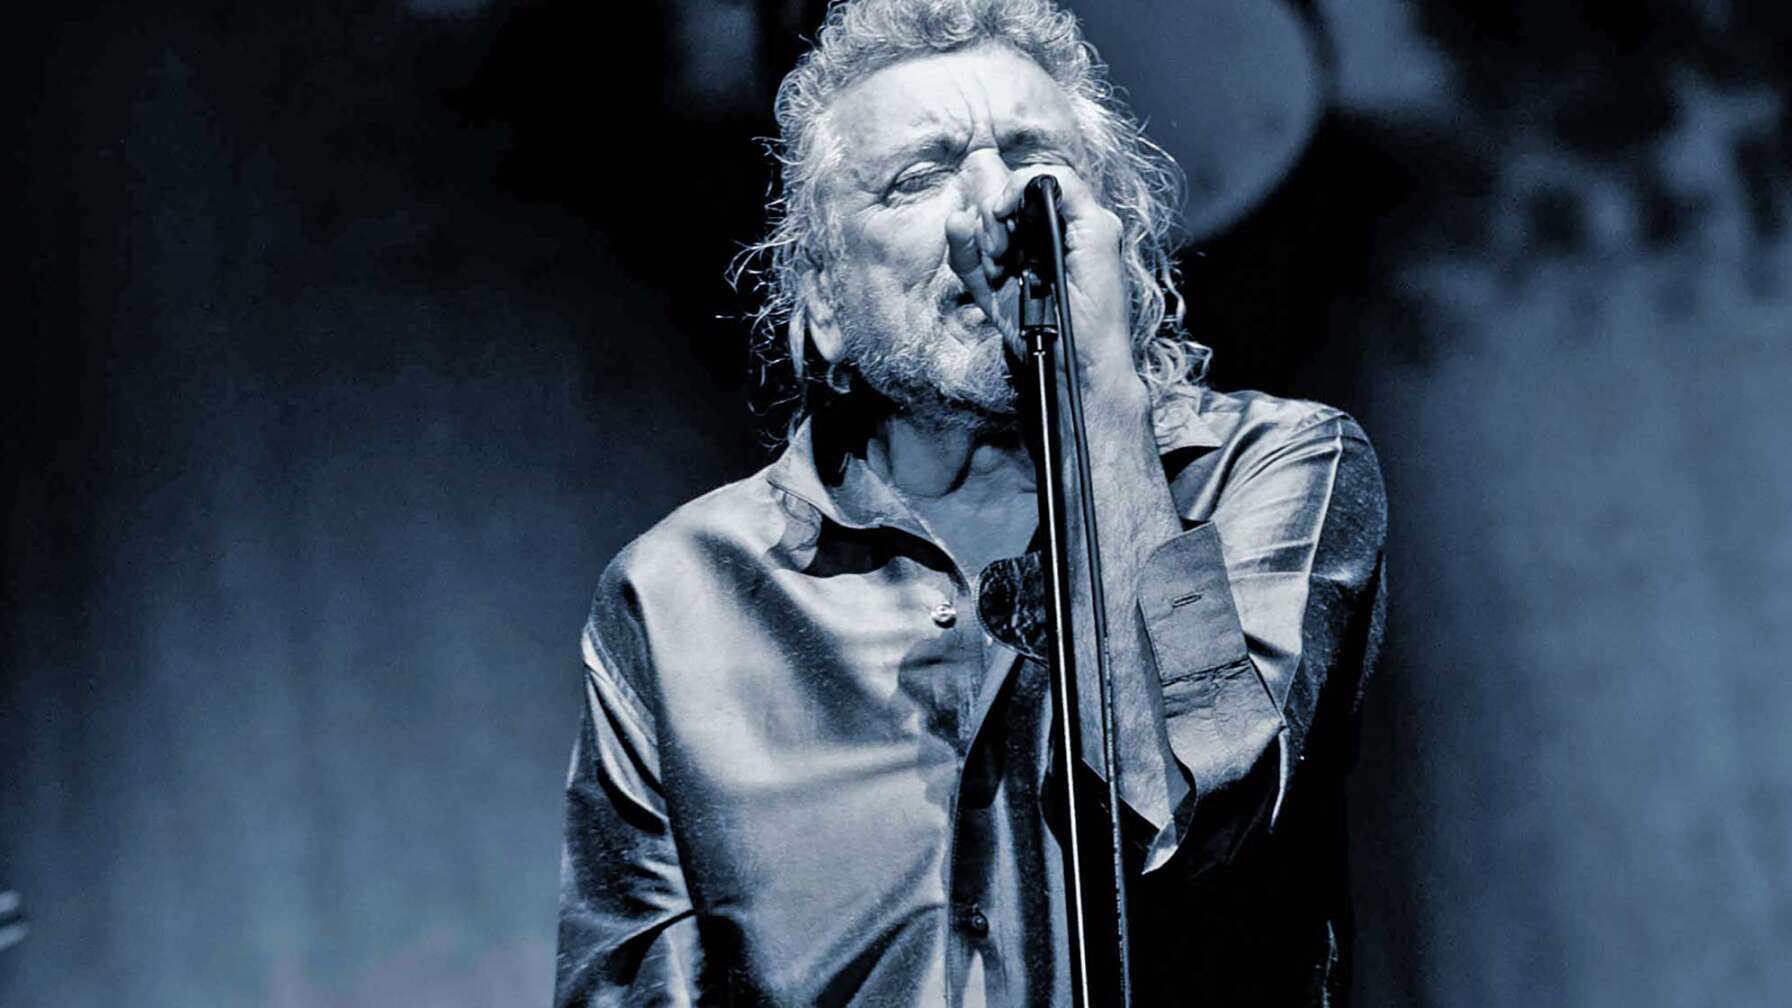 Robert Plant auf der Bühne bei einer Performance als Solokünstler.